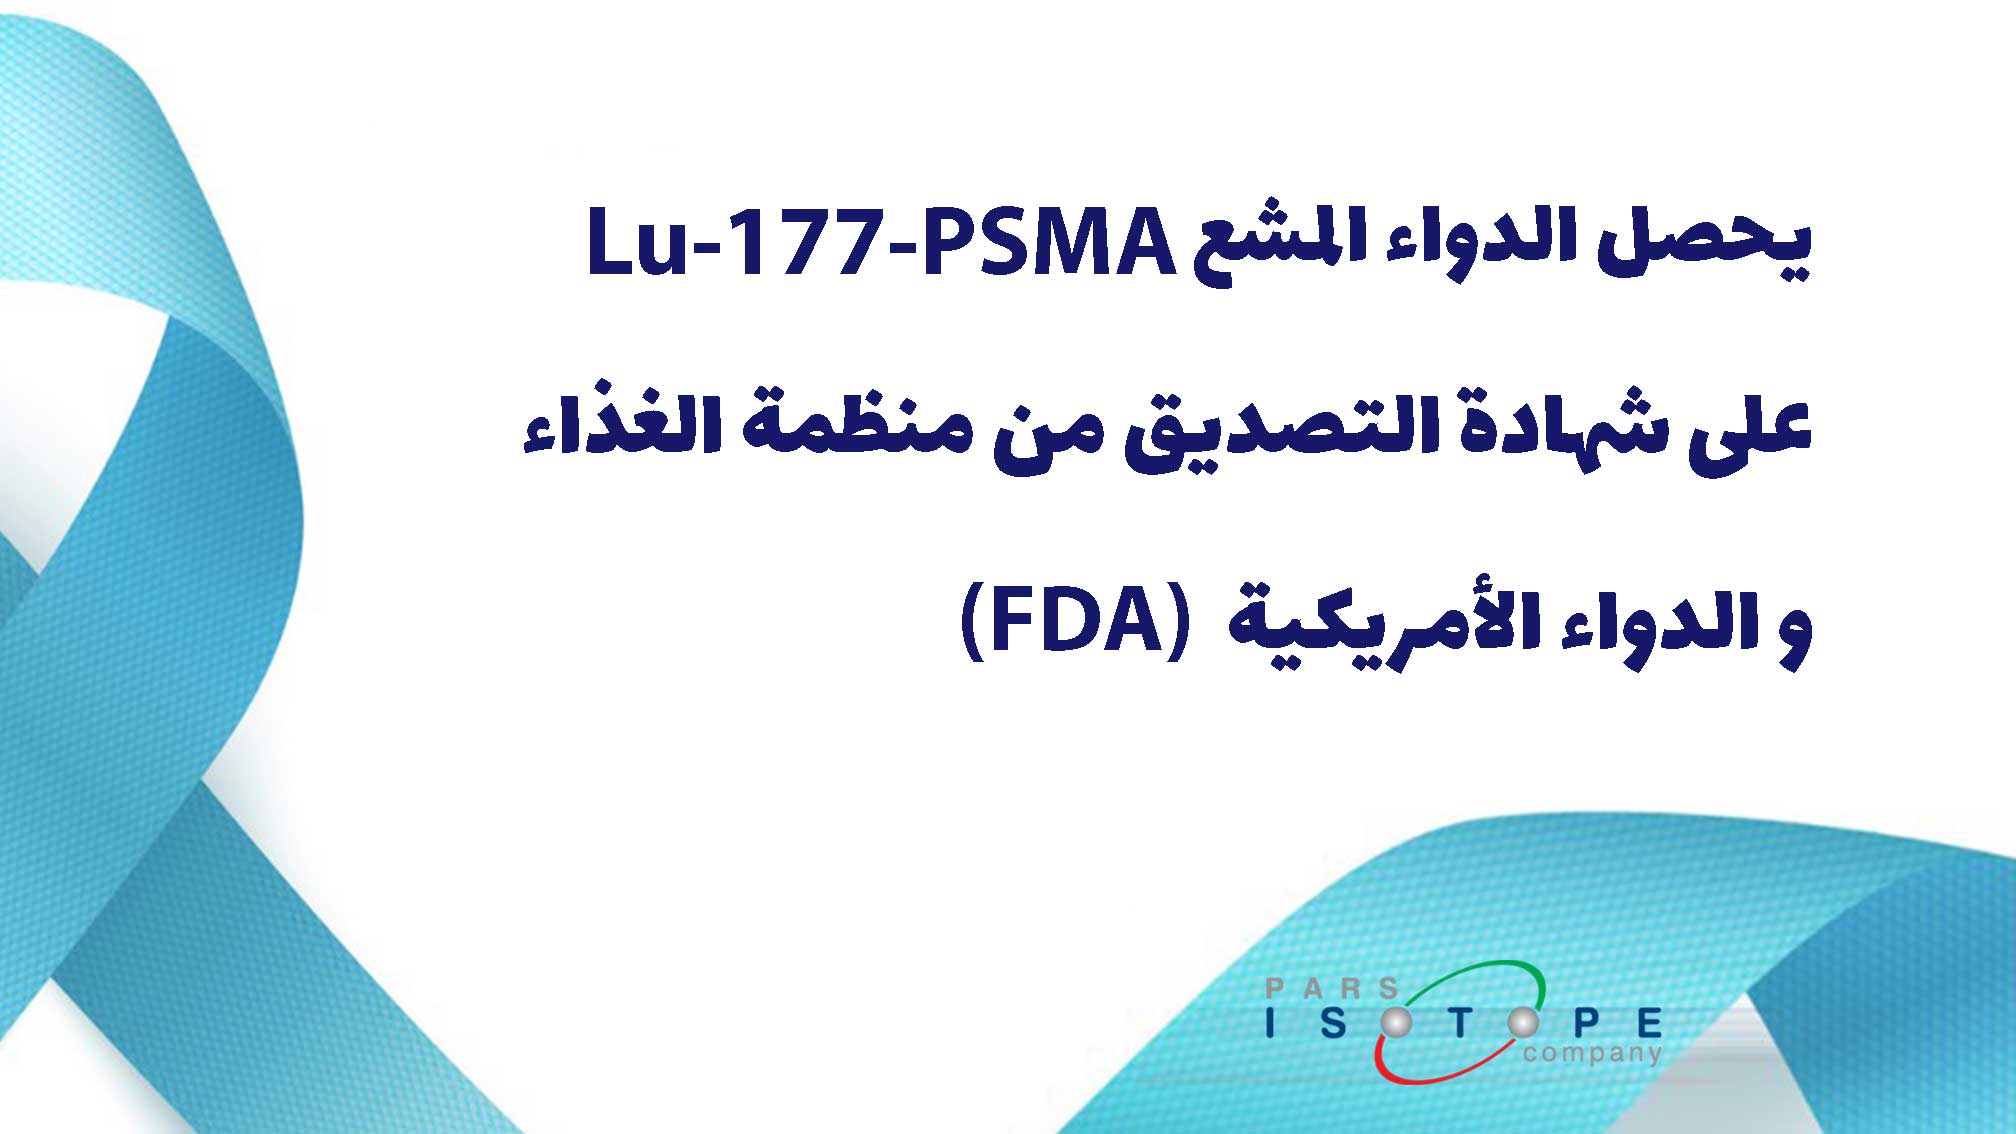 یحصل الدواء المشع Lu-177-PSMA علی شهادة التصدیق من منظمة الغذاء و الدواء الأمریکیة(FDA)